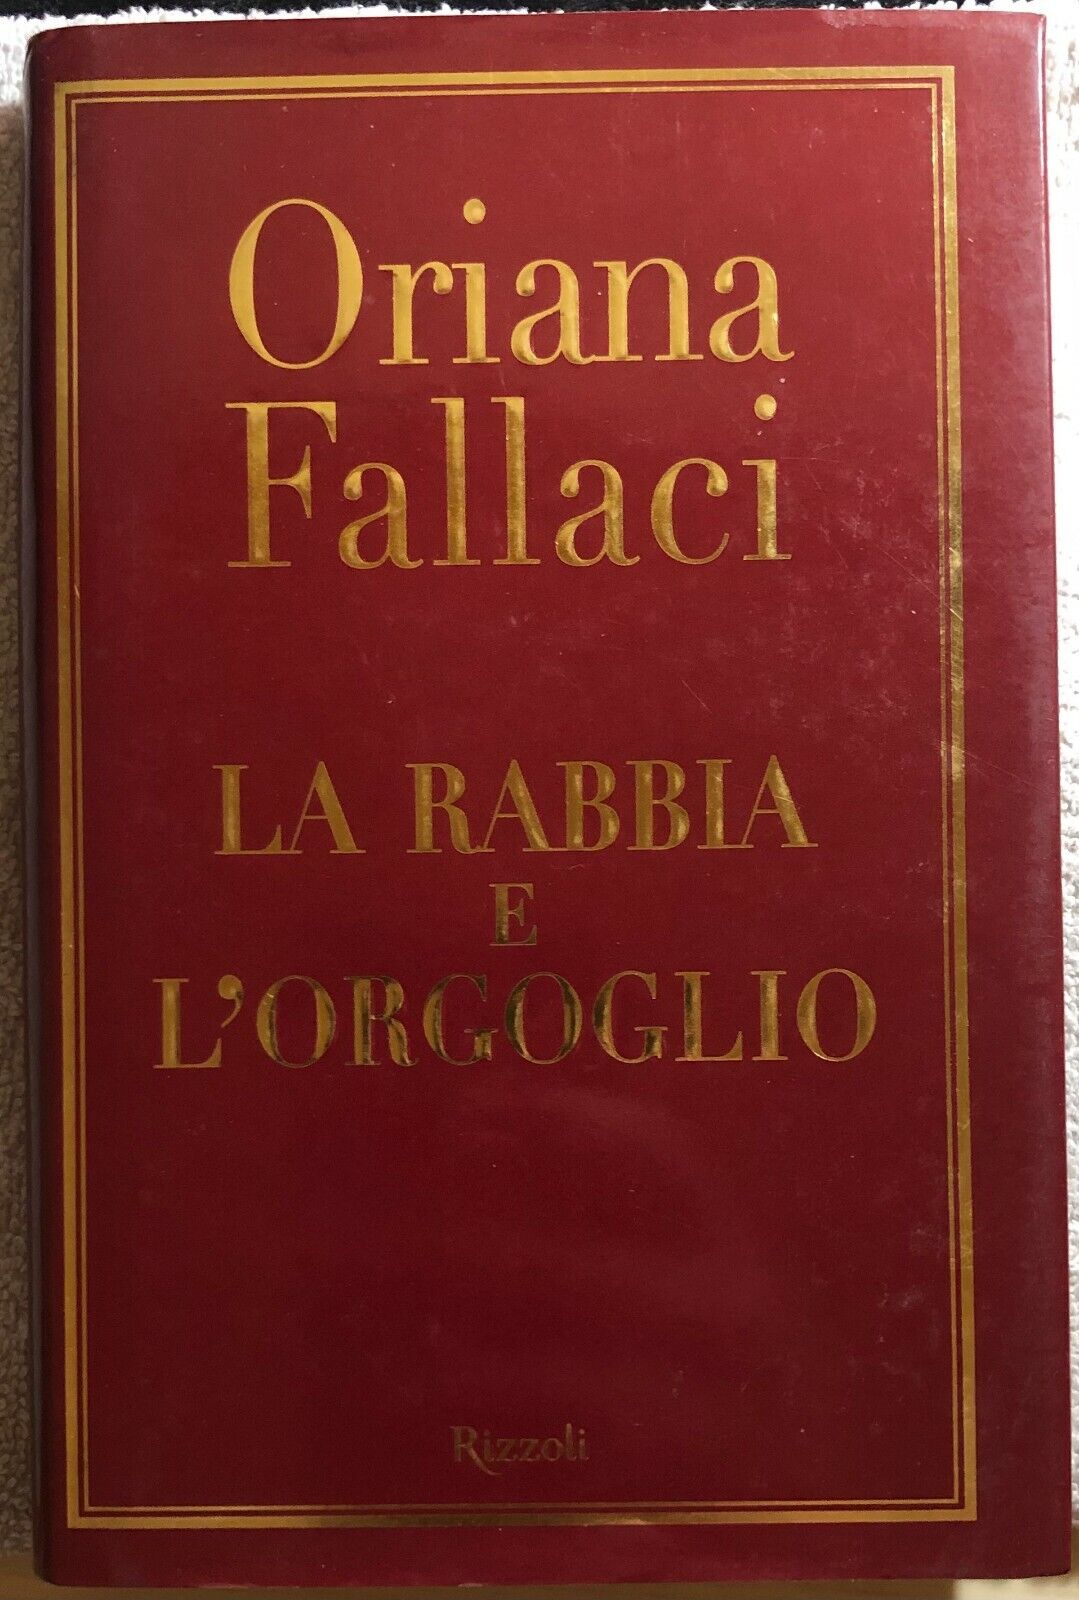 La rabbia e L'orgoglio di Oriana Fallaci,  2001,  Rizzoli